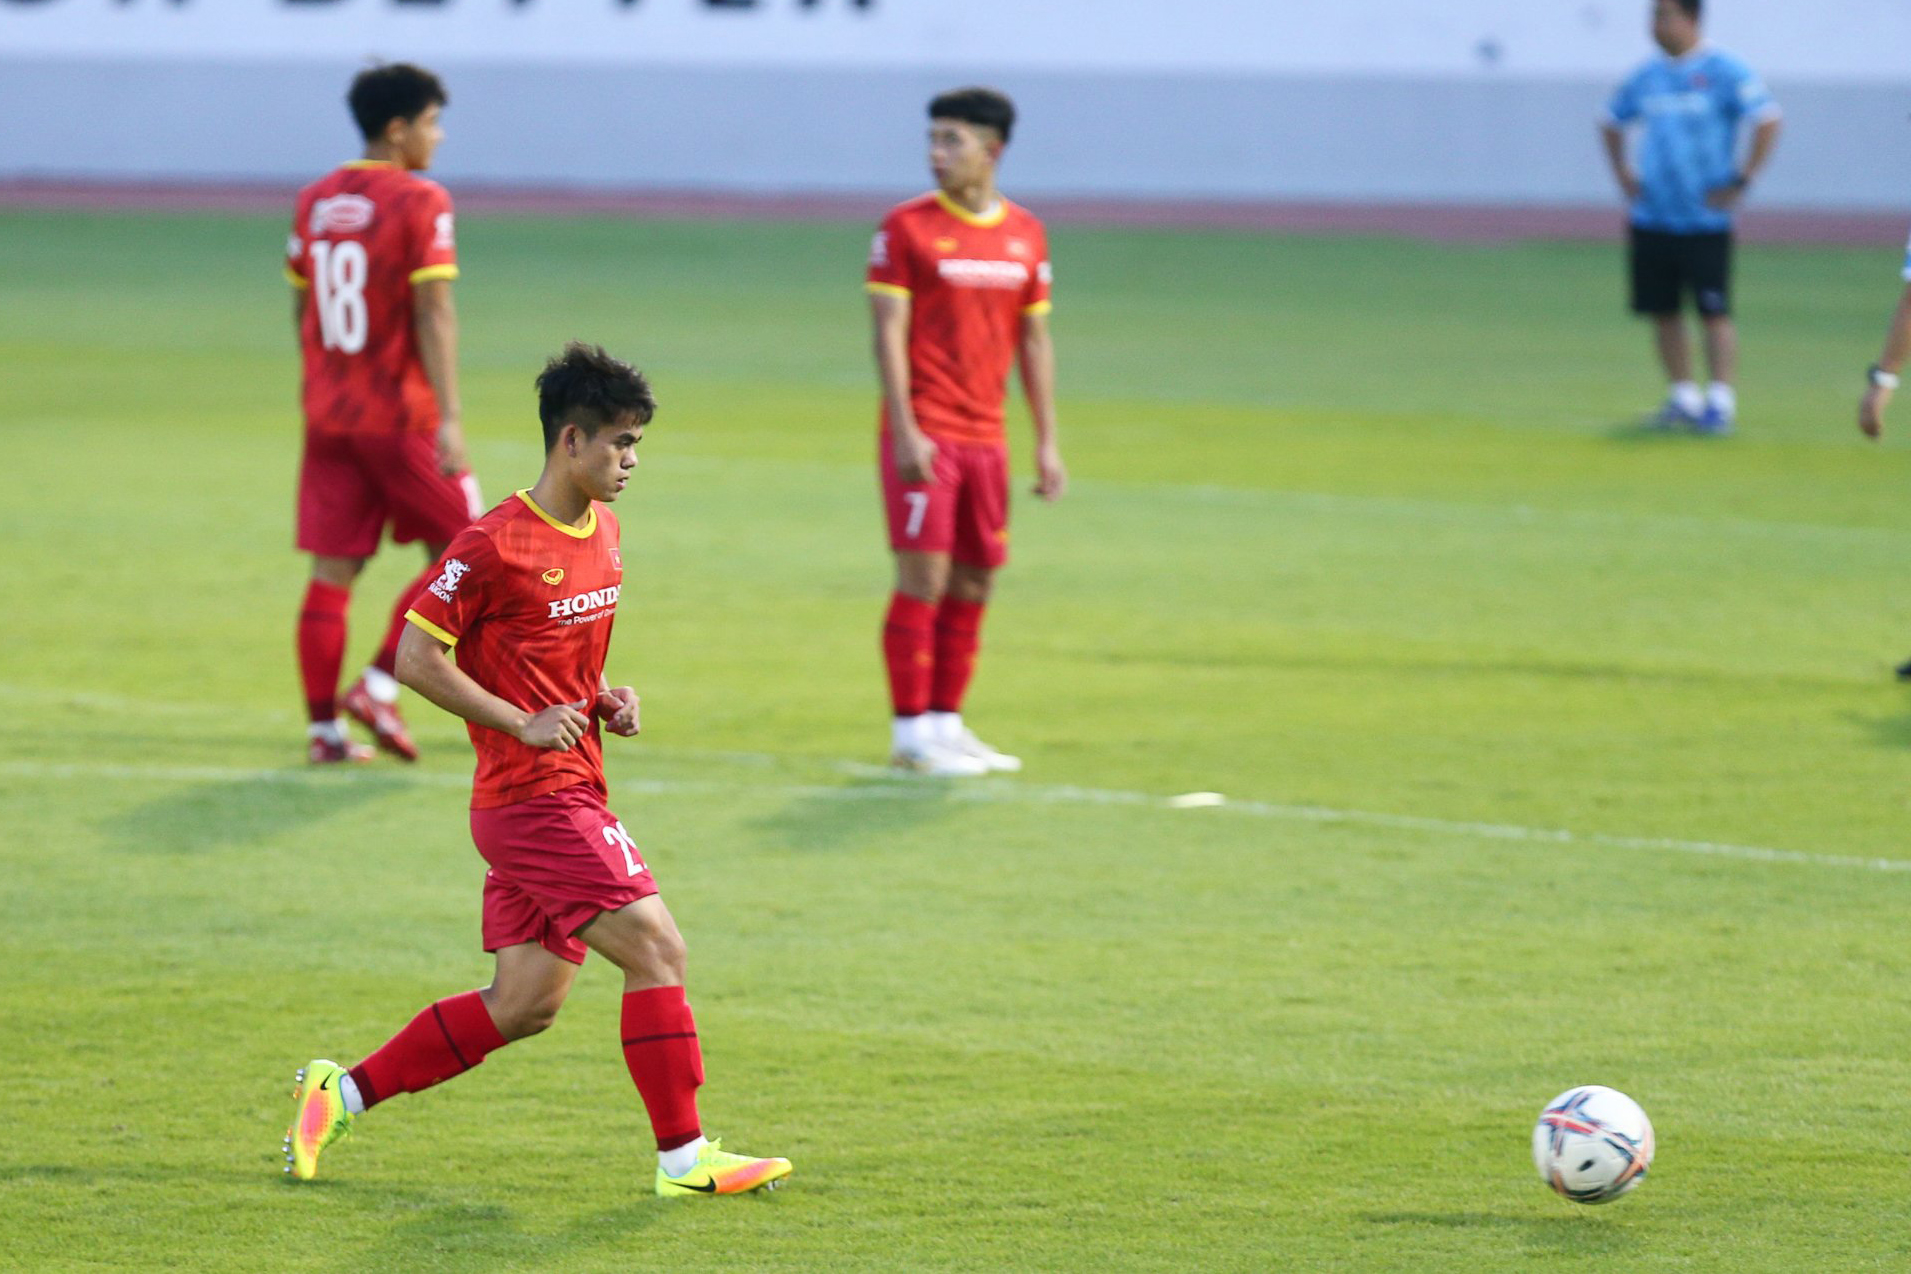 Đội tuyển Việt Nam vừa nghỉ một ngày nên huấn luyện viên Park Hang-seo không yêu cầu các cầu thủ thực hiện các bài tập nặng trong ngày 9.12.